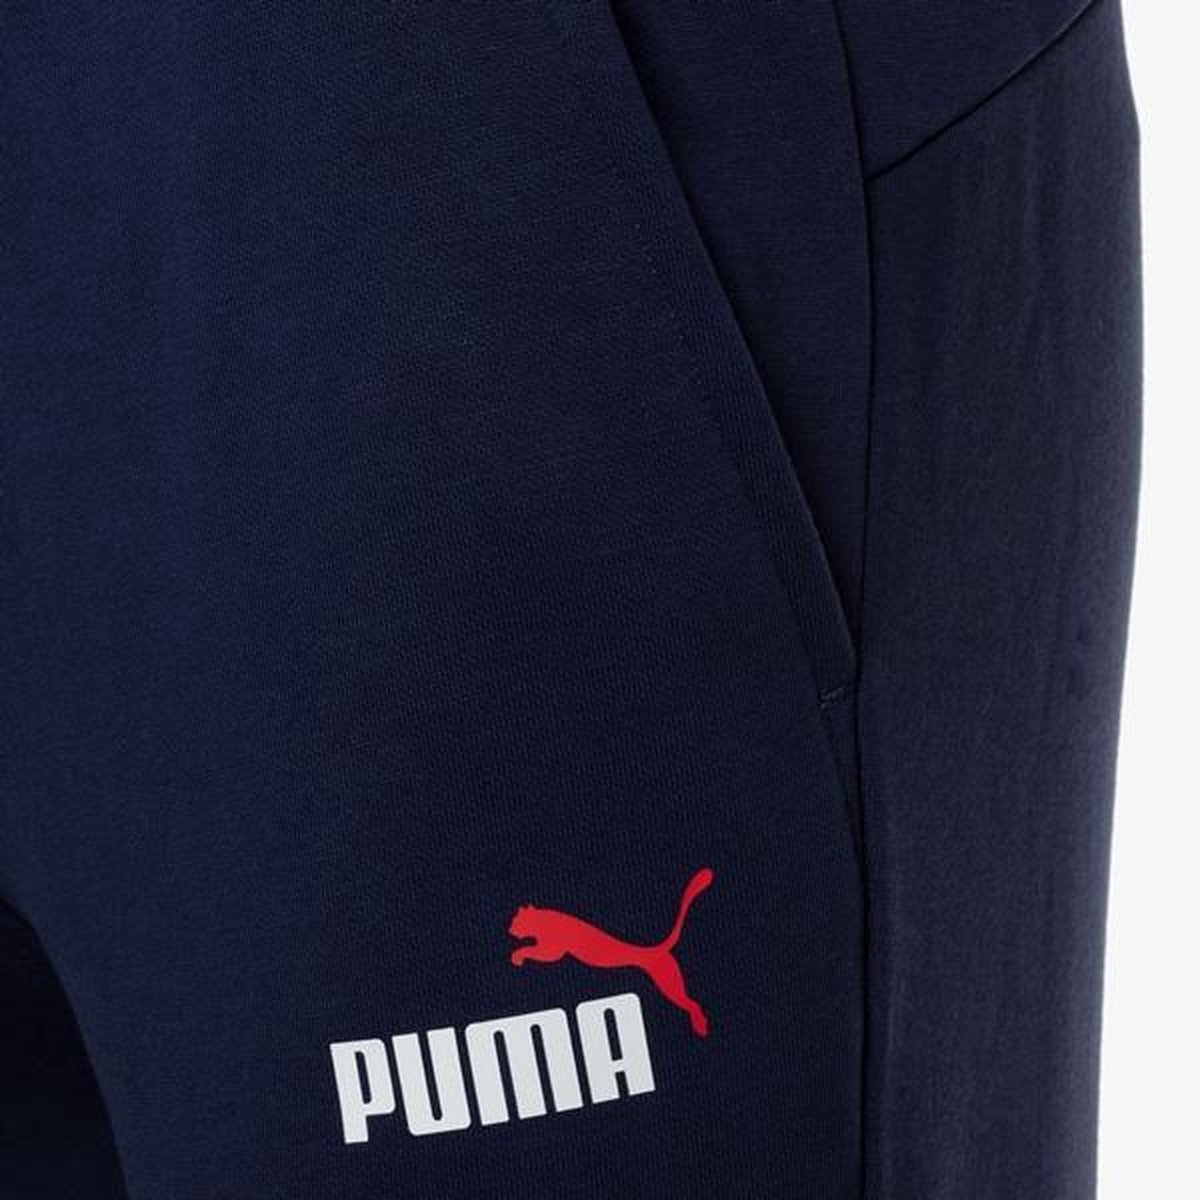 Pantalon de survêtement homme Puma Essentials - Blauw - Taille XL